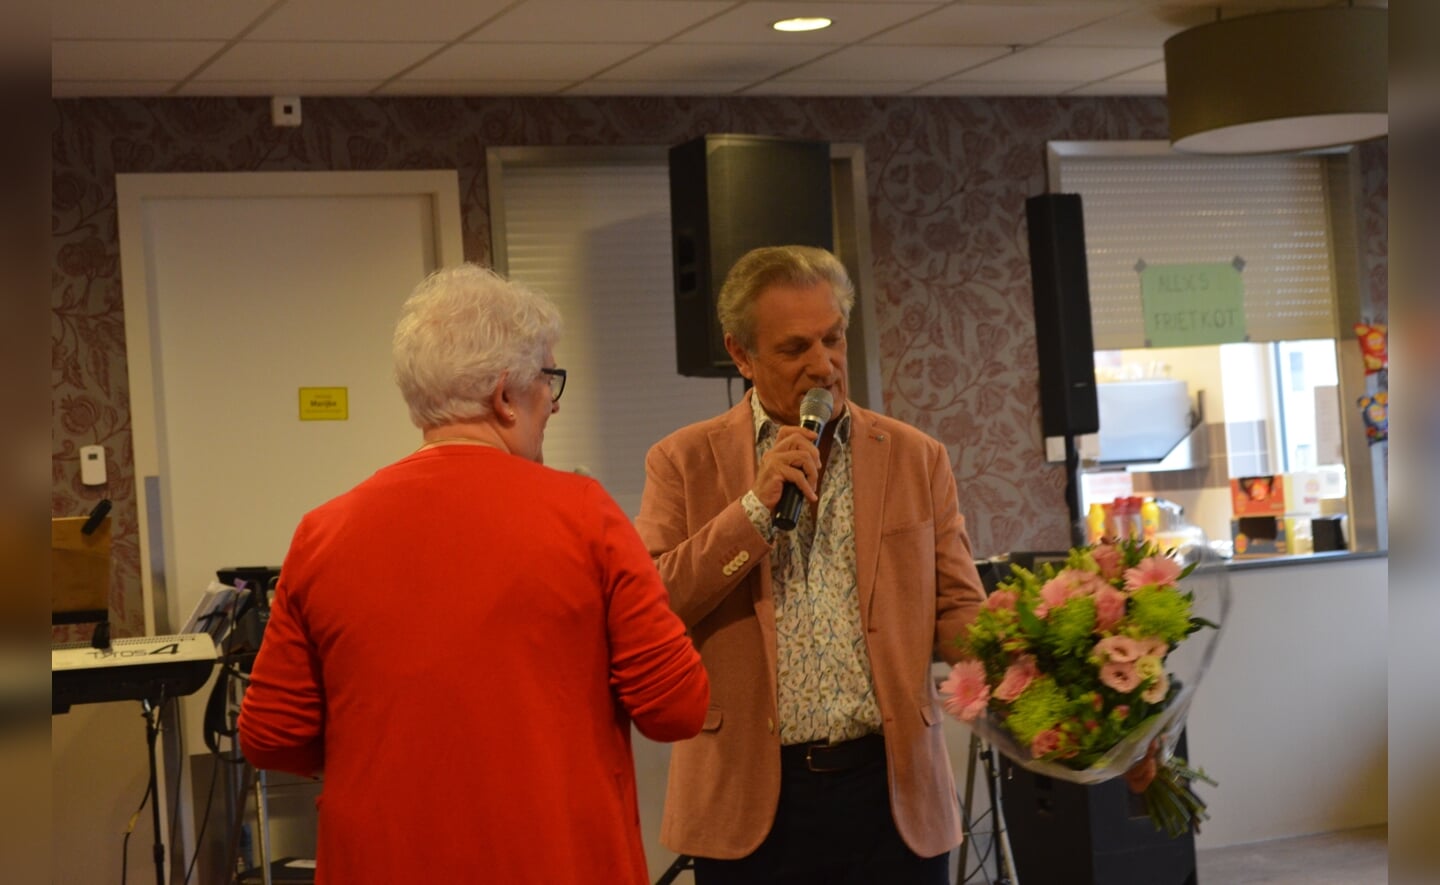 De muziekmiddag in Elisabethsdael was zondagmiddag een groot succes met een optreden het Strijpenhof Trio uit Liempde en zanger Salim Segers uit België. Met 150 bezoekers was het een uitverkocht huis. Wim van de Langenberg was de organisator van de middag en zag dat de activiteit voor herhaling vatbaar was. 